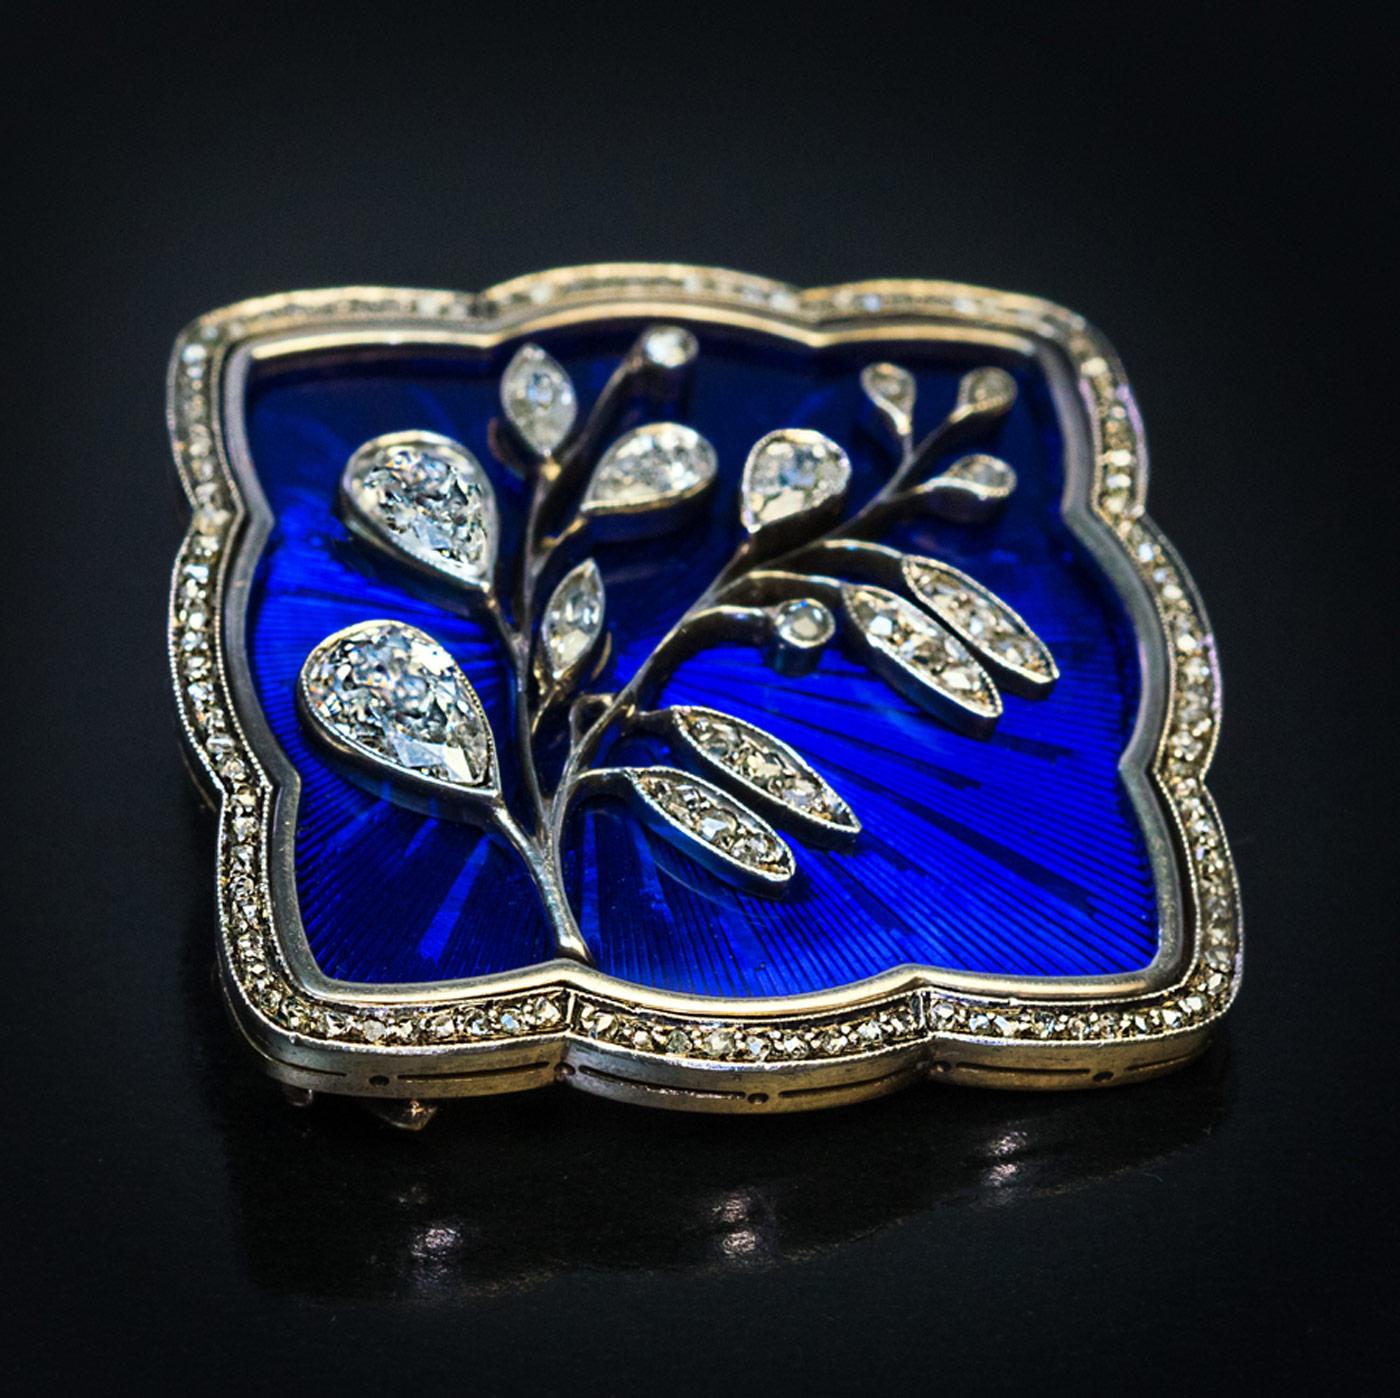 Cette broche/épingle exquise datant de l'époque tsariste a été fabriquée à Moscou entre 1908 et 1917 par l'éminente maison de joaillerie Feodor Lorie.
La broche est fabriquée à la main en or 14 carats et en argent. Elle présente une fleur en diamant